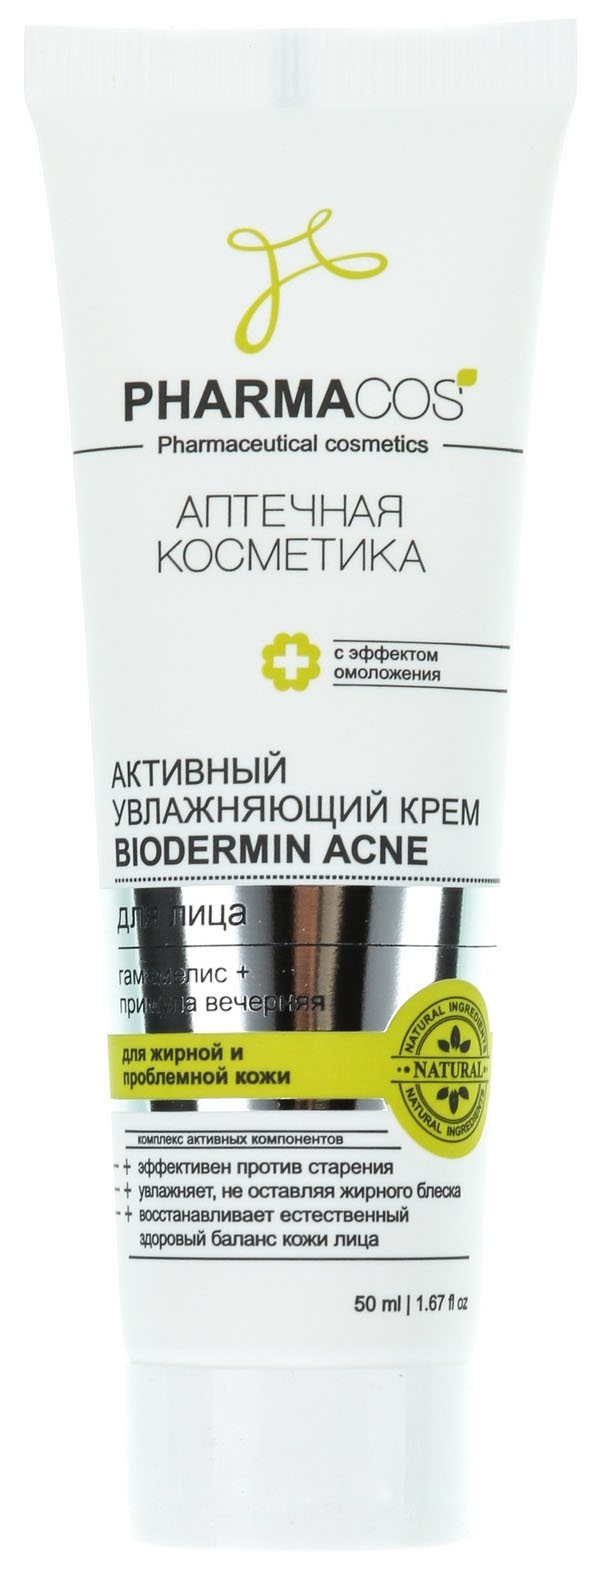 Крем для лица Витэкс Pharmacos Biodermin Acne 50 мл крем для лица витэкс pharmacos biodermin acne 50 мл